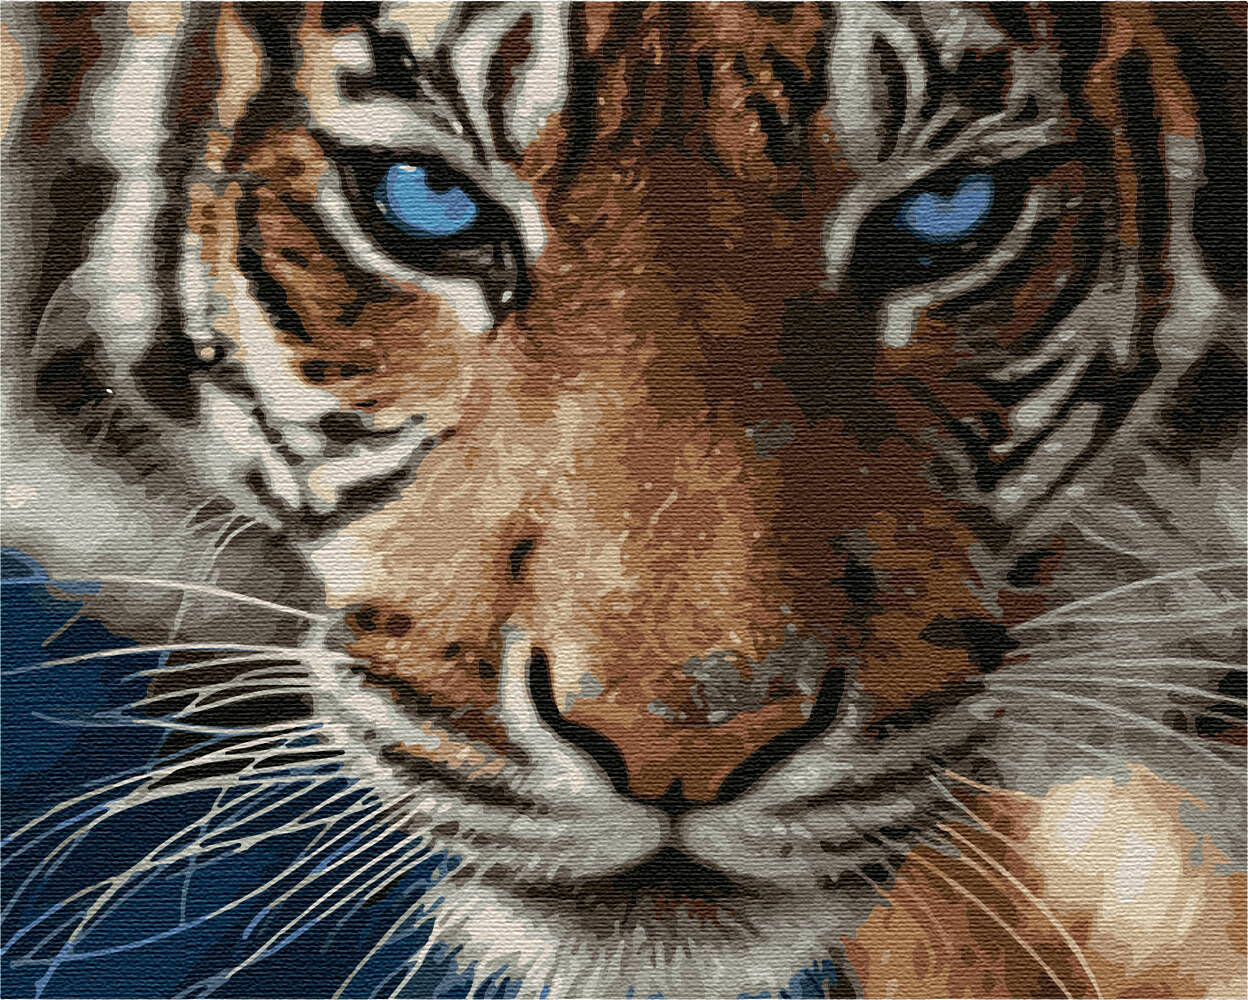 OVP Malen nach Zahlen Tiger Tigerfamilie Afrika  Größe 30 cm x 40 cm  NEU 